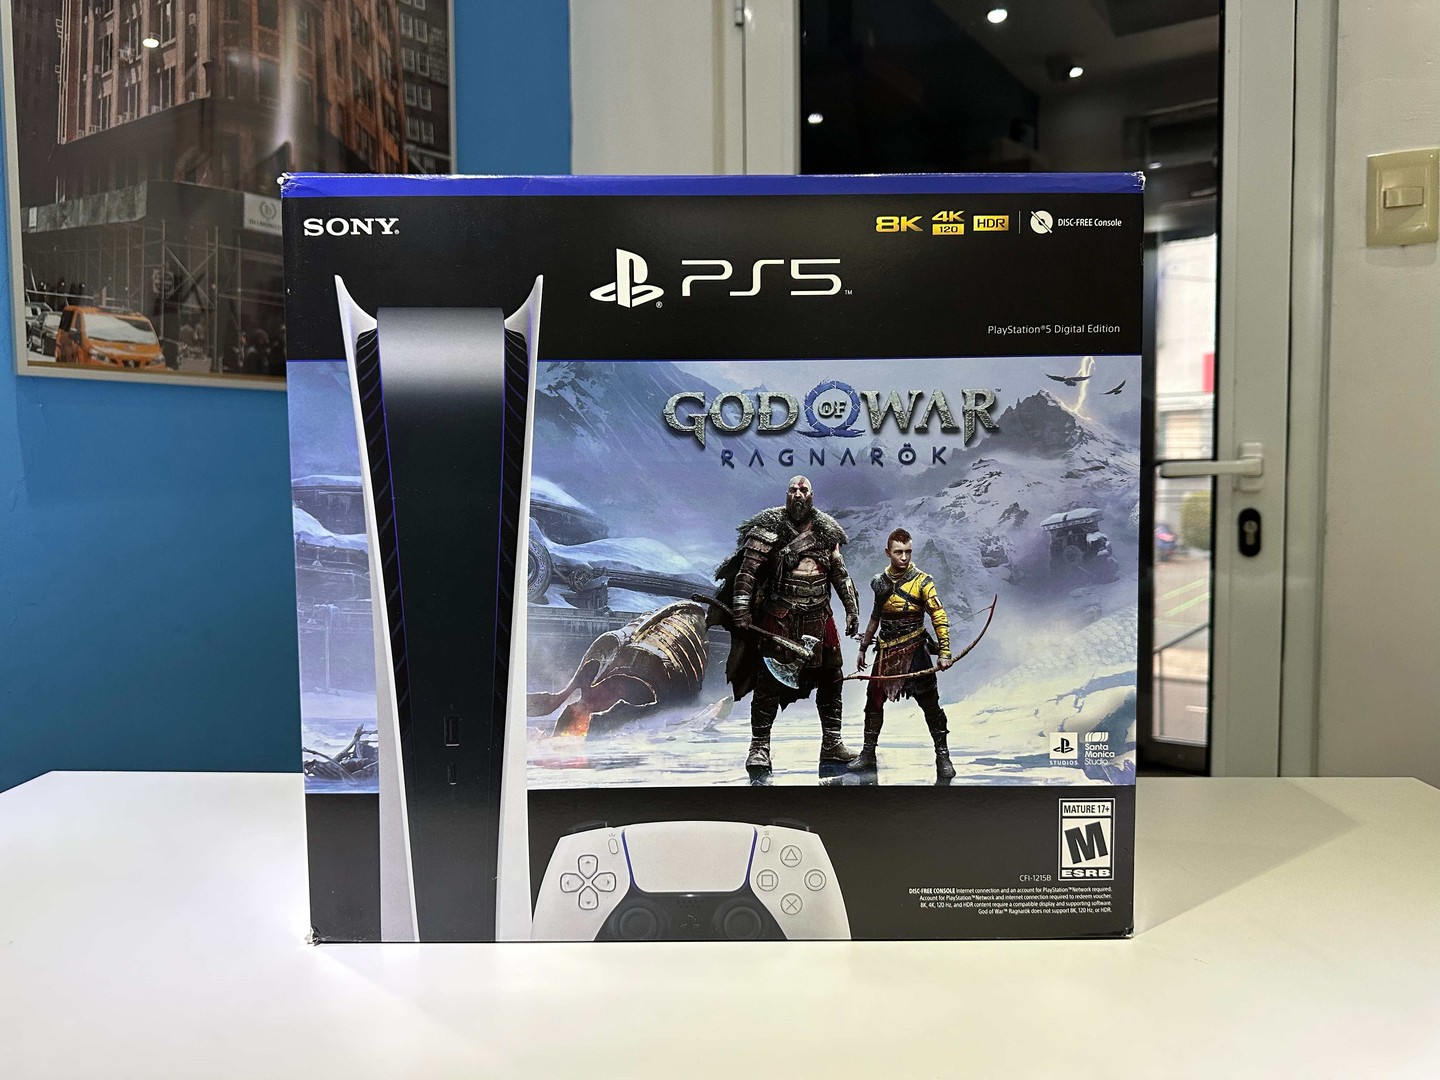 consolas y videojuegos - Vendo PlayStation 5 Edición Digital - Juego GOD OF WAR -Nuevos RD$ 331,400 NEG 0